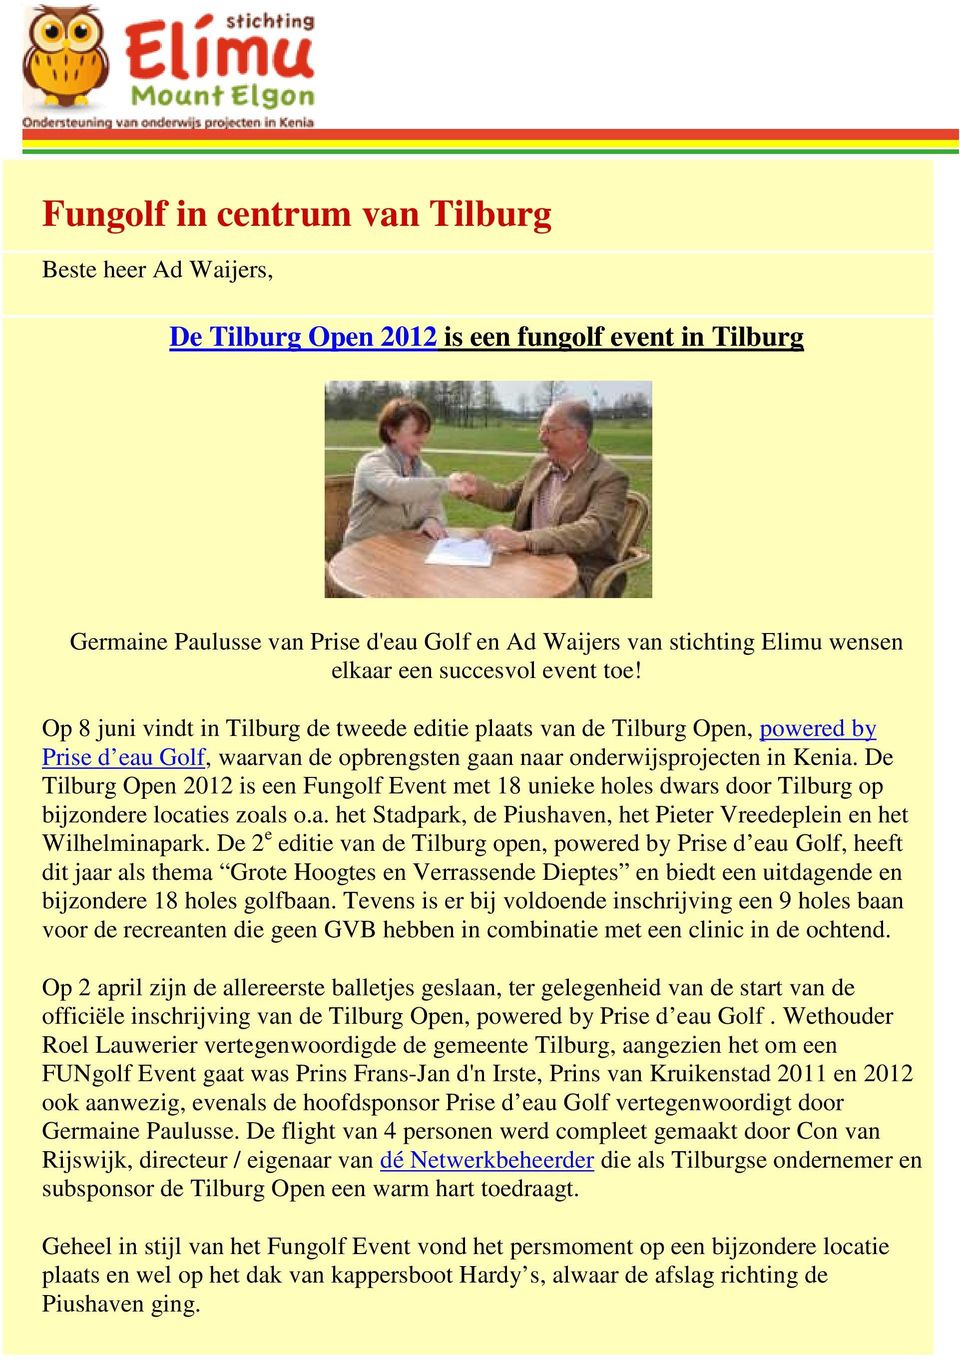 De Tilburg Open 2012 is een Fungolf Event met 18 unieke holes dwars door Tilburg op bijzondere locaties zoals o.a. het Stadpark, de Piushaven, het Pieter Vreedeplein en het Wilhelminapark.